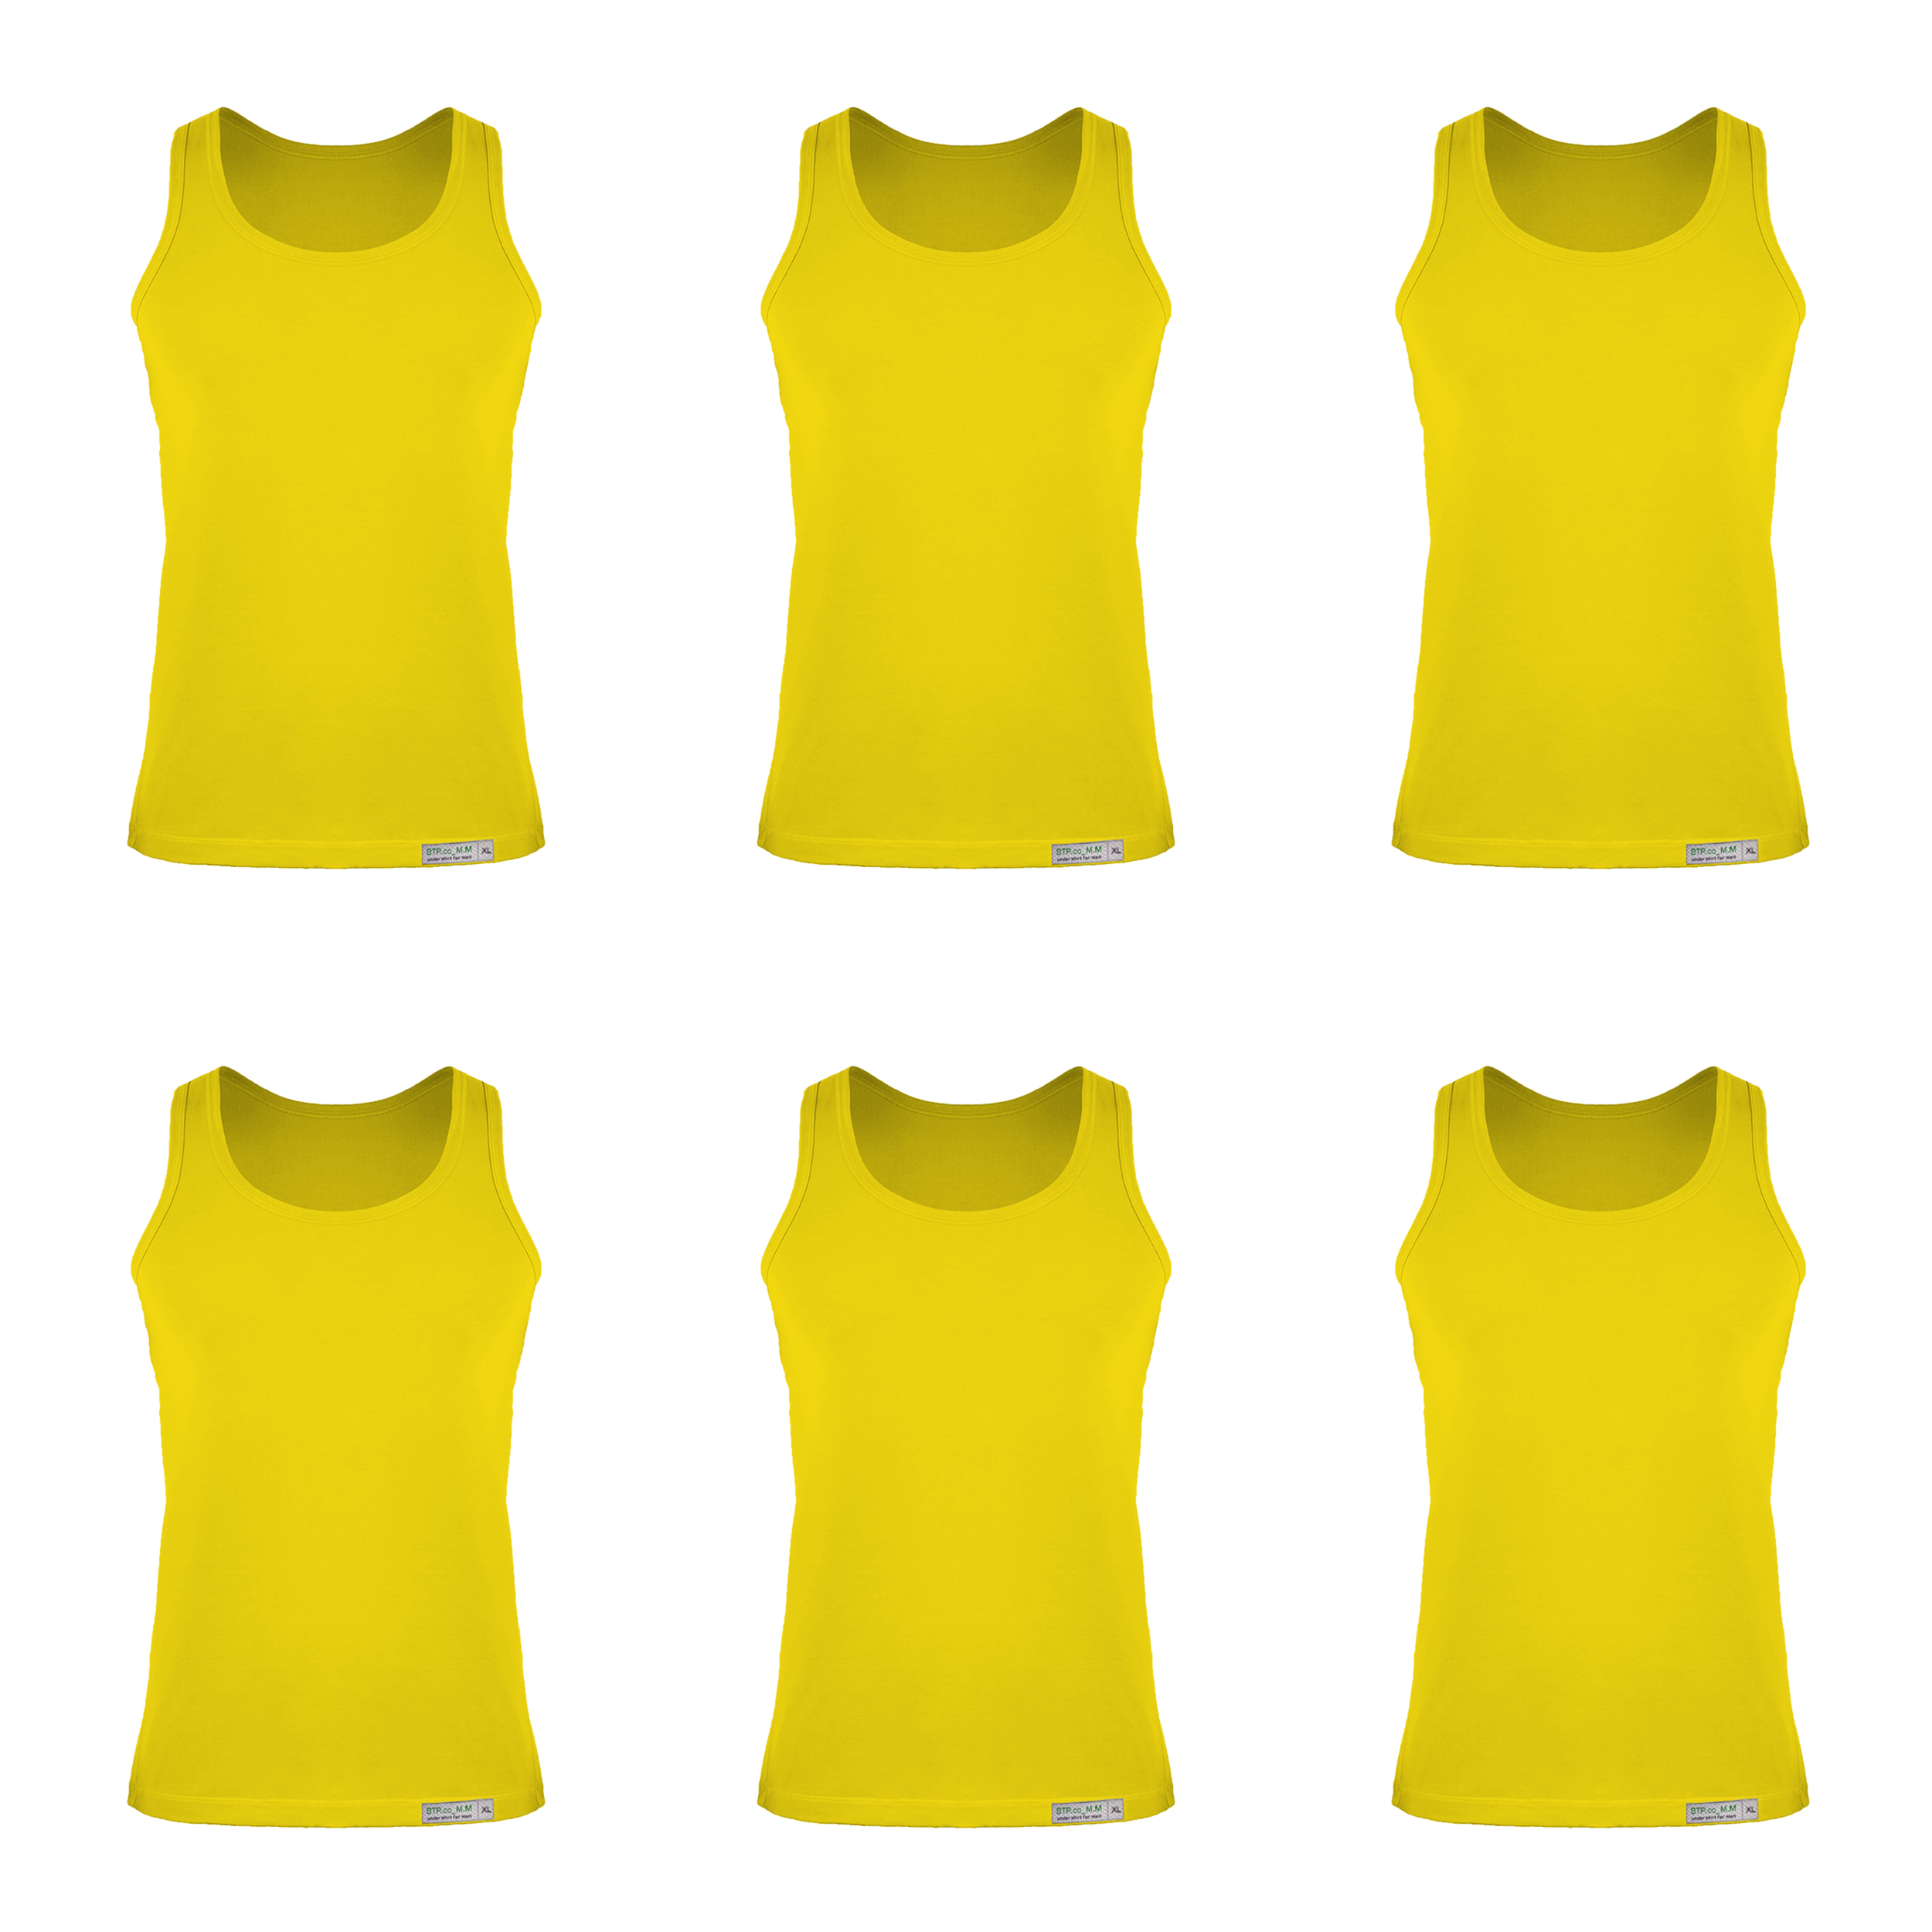 زیرپوش پسرانه برهان تن پوش مدل رکابی 5-01 رنگ زرد بسته 6 عددی